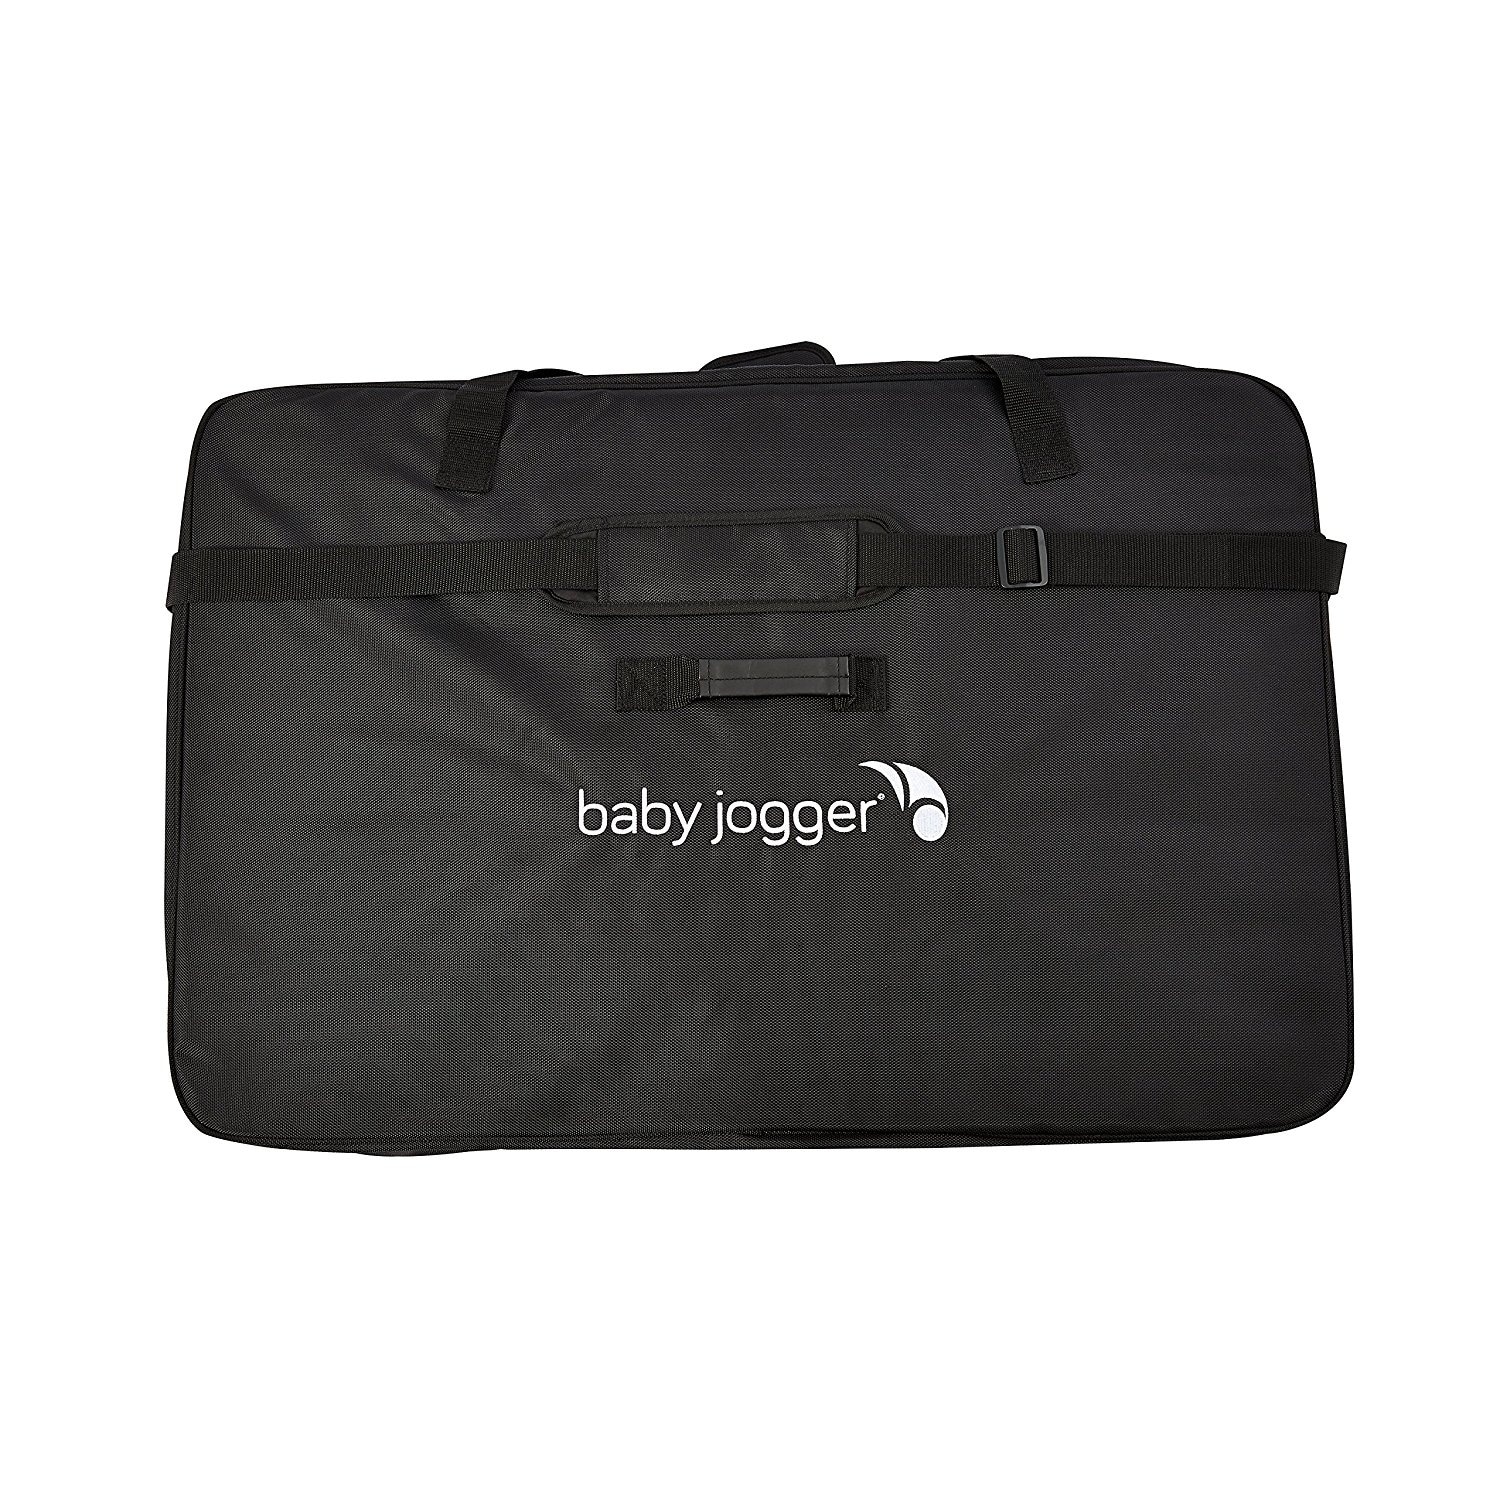 baby jogger diaper bag